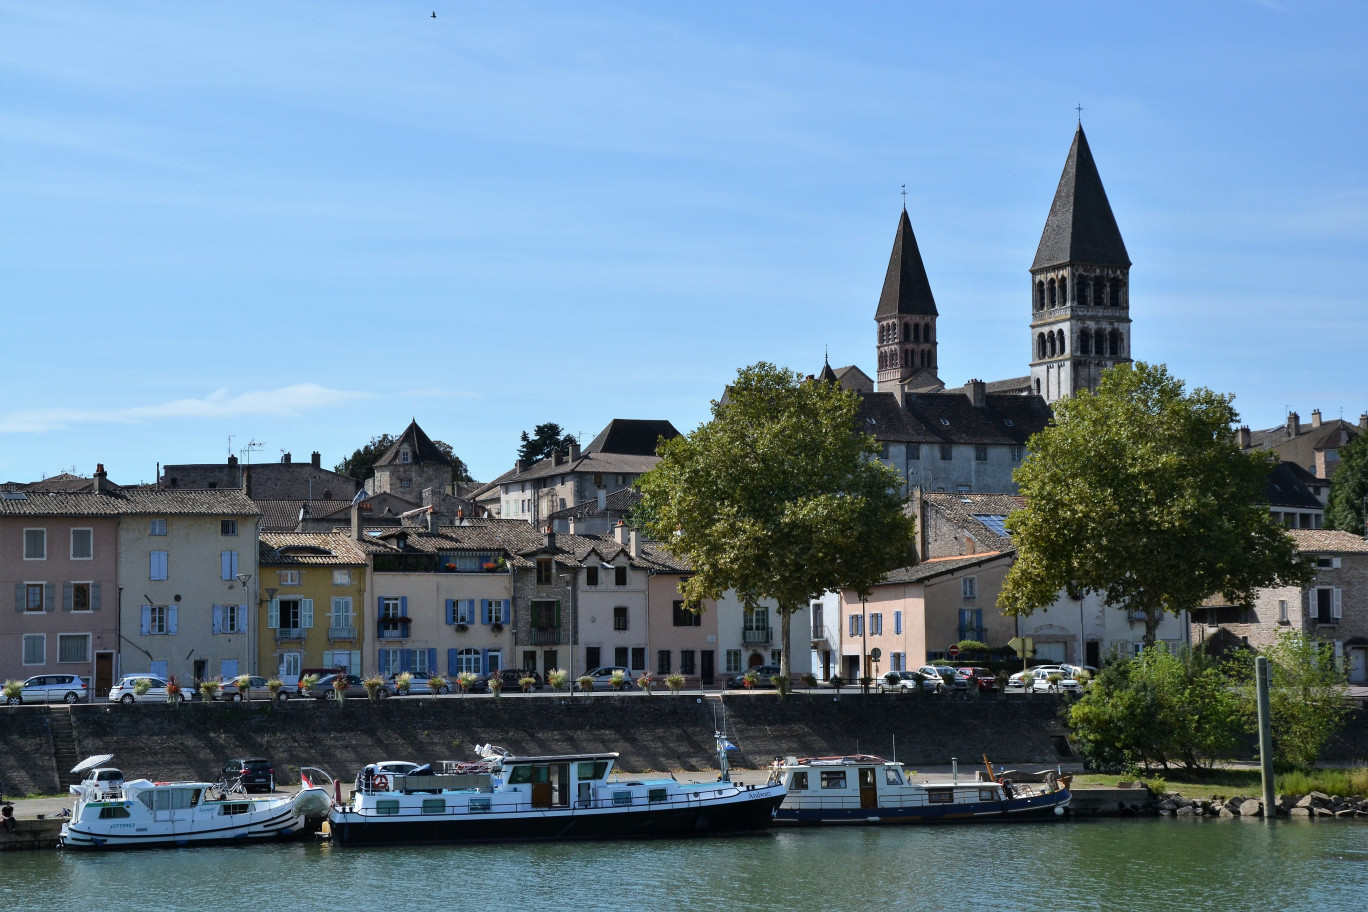 Le chéquier des incontournables de Saône-et-Loire vise à valoriser les sites touristiques du département, ici l’abbaye de Saint Philibert à Tournus, tant auprès des touristes que des habitants. (@ Pixabay)